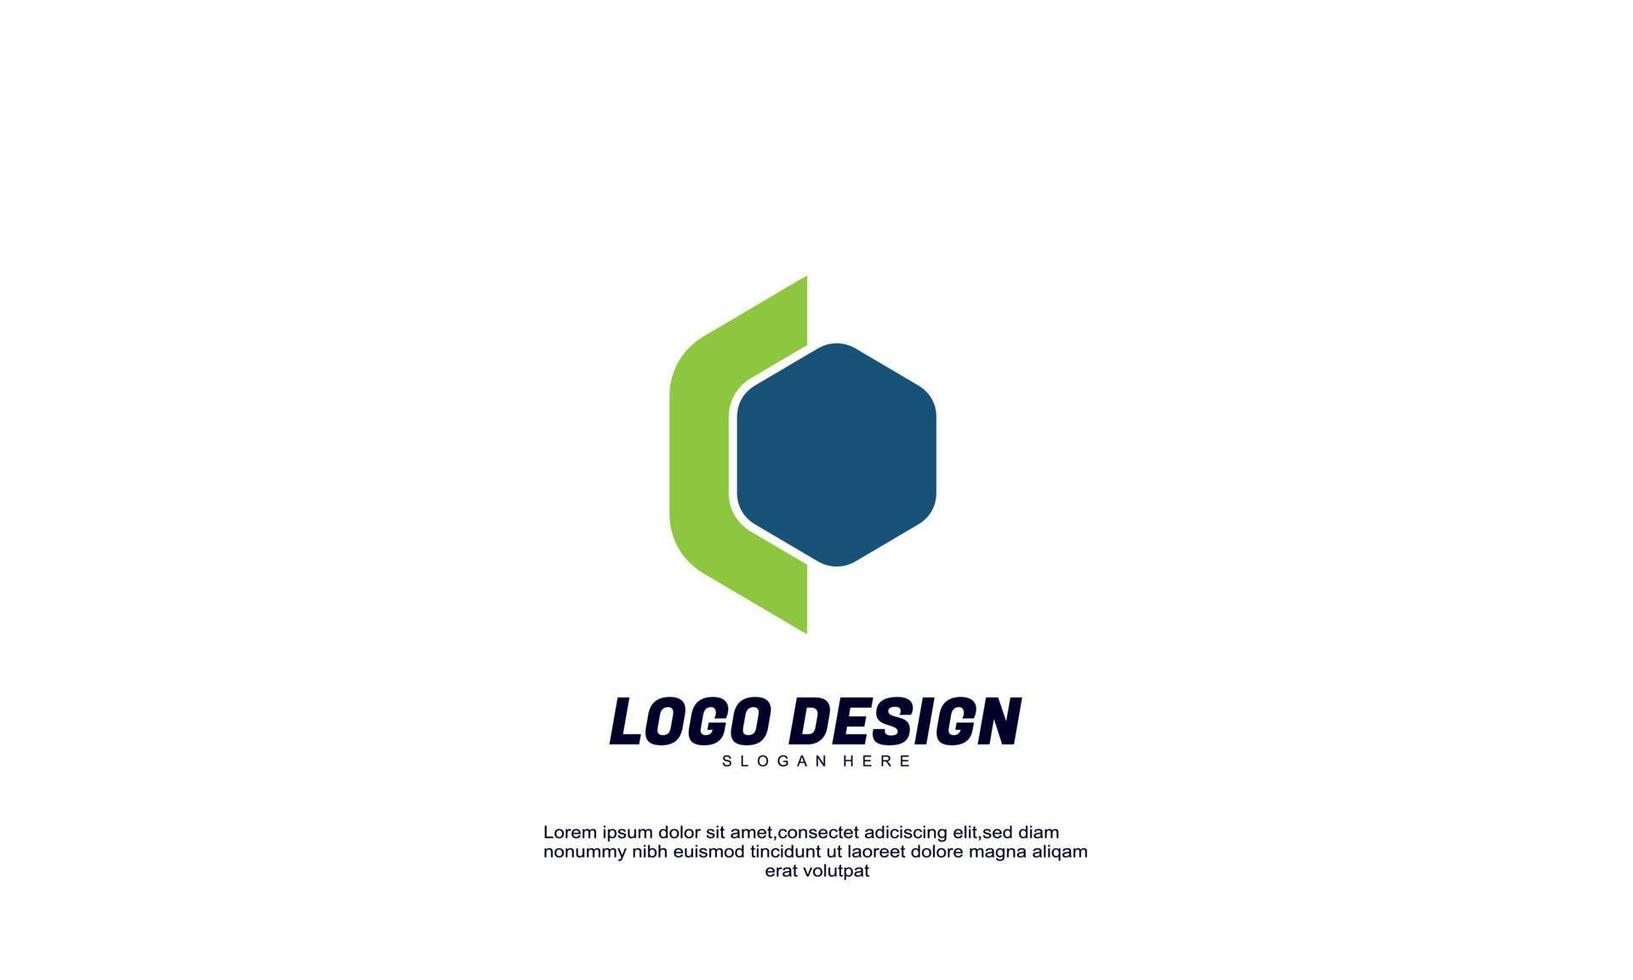 idée créative abstraite logo identité de marque pour le modèle de conception de logo de société de financement économique coloré vecteur